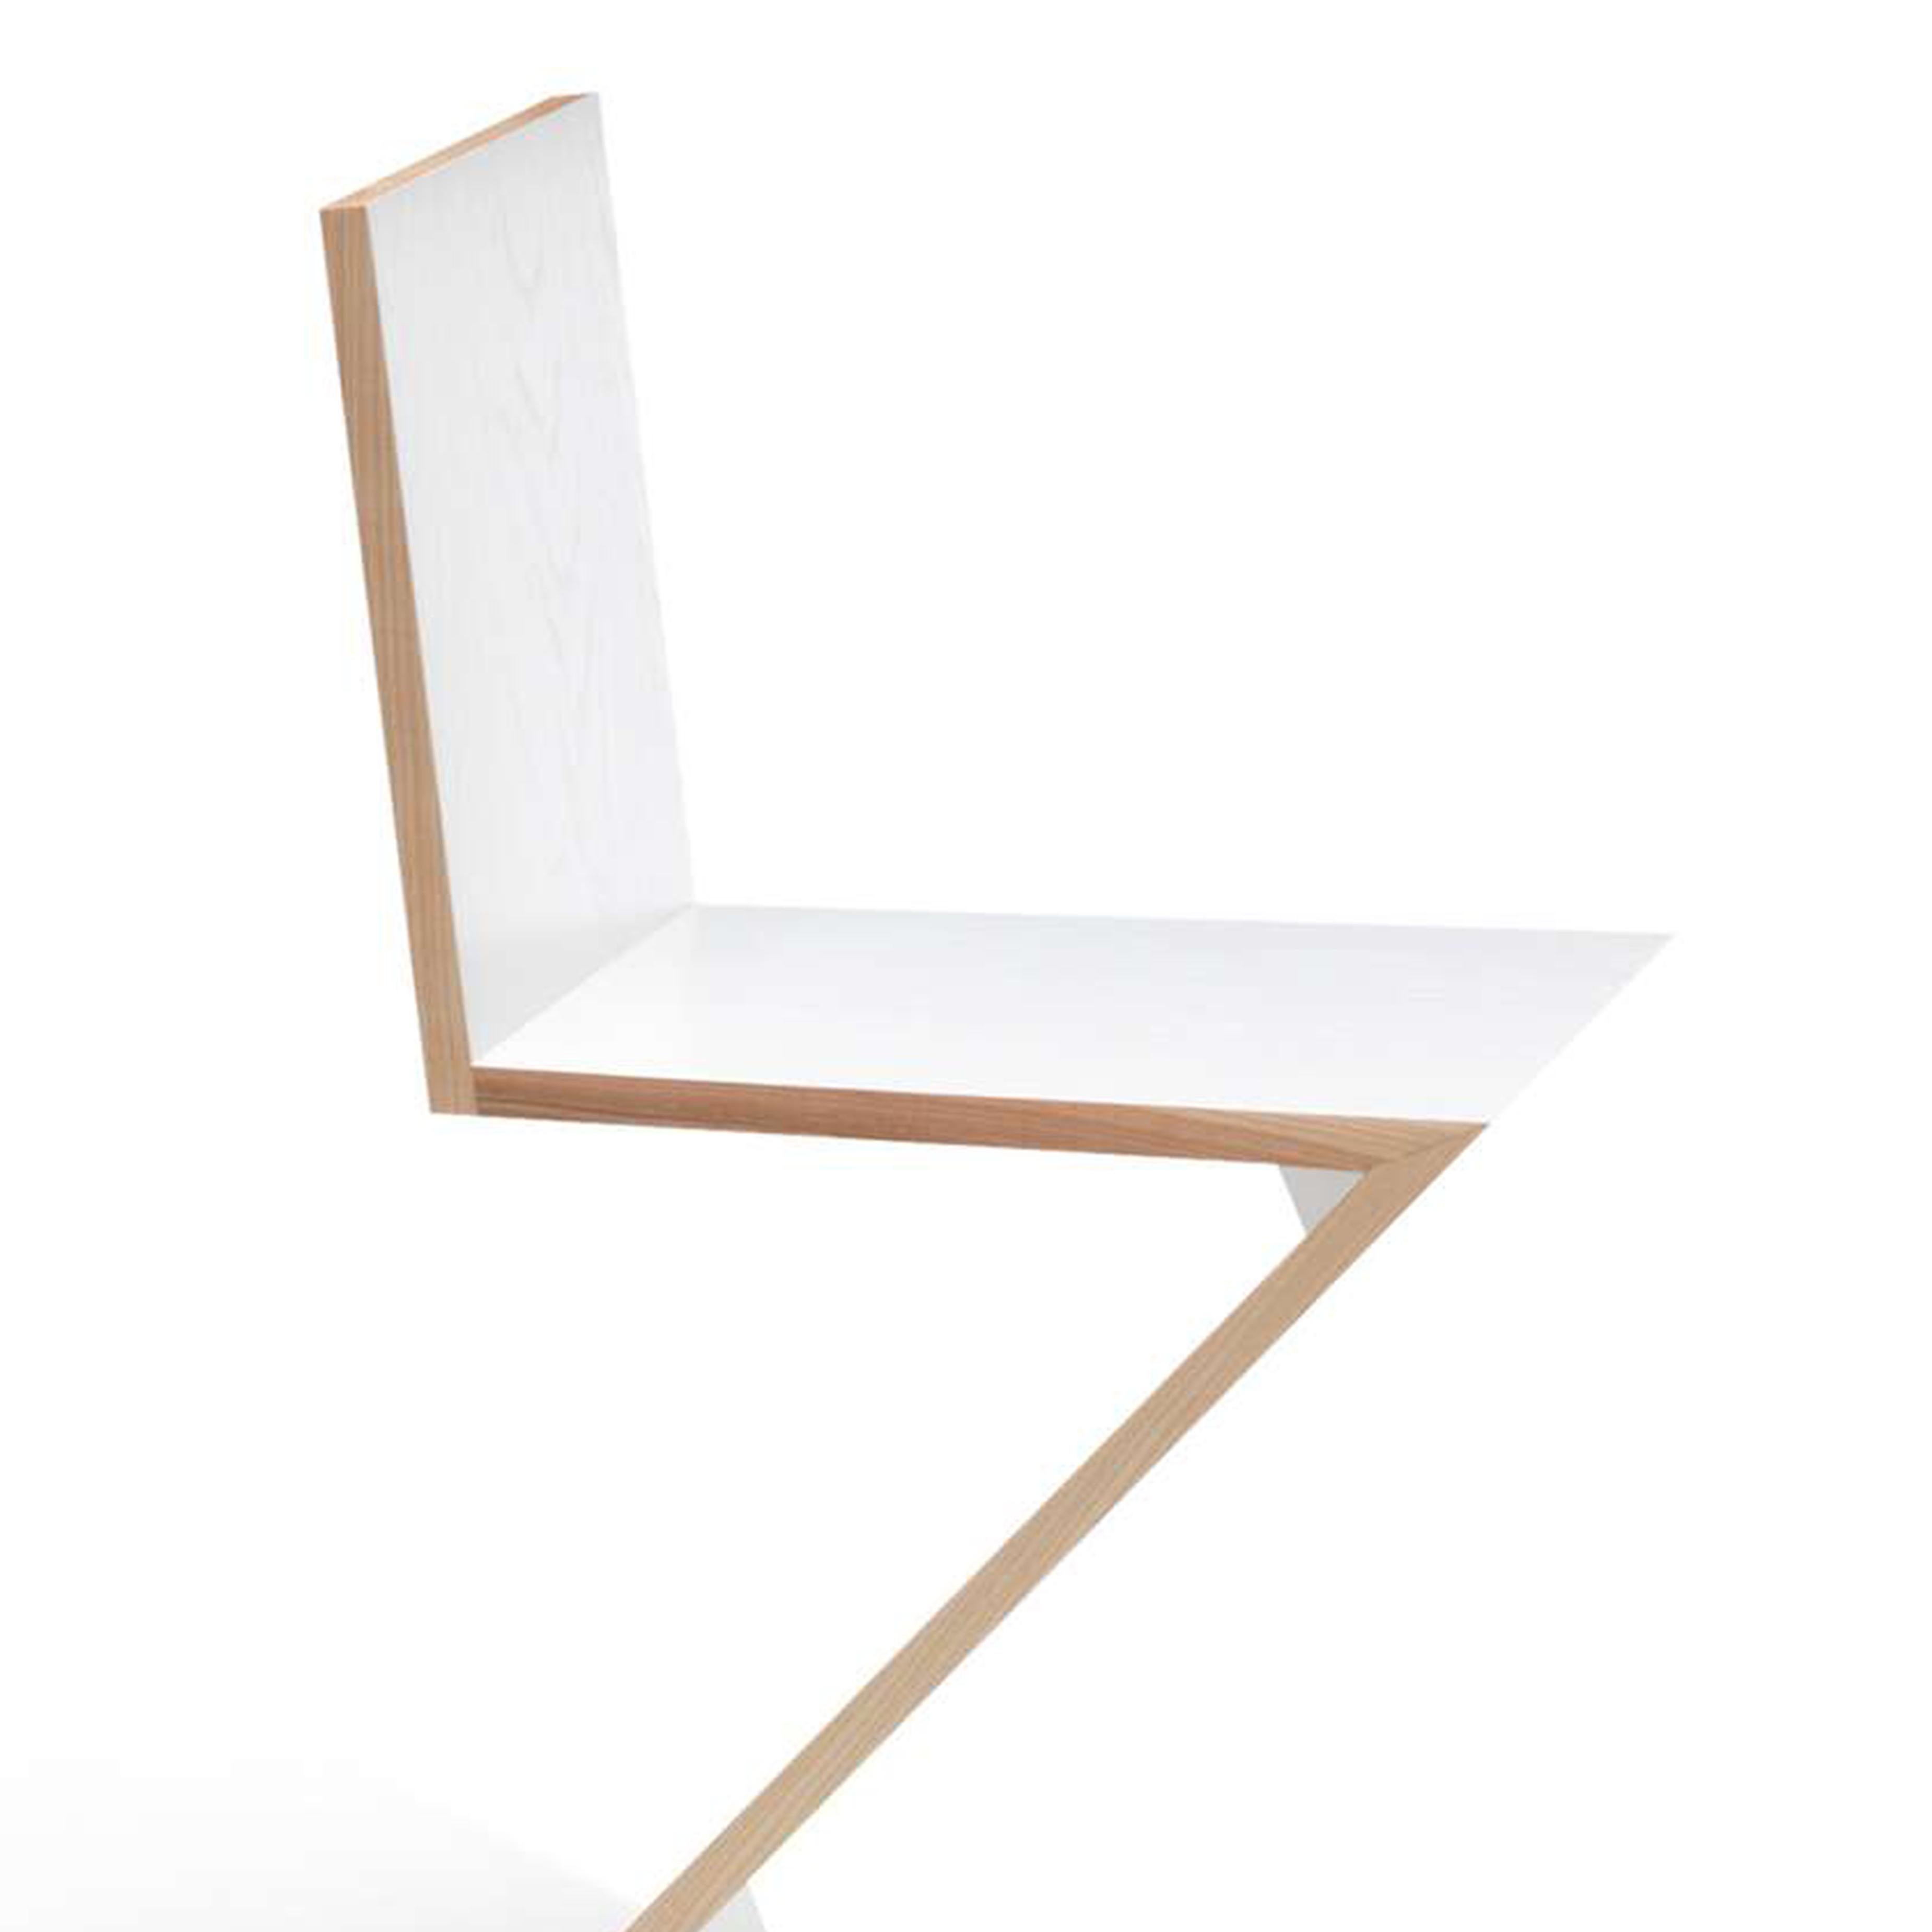 Stühle, entworfen von Gerrit Thomas Rietveld im Jahr 1934. Neuauflage 1973/ 2011.
Hergestellt von Cassina in Italien.

Dieser von Gerrit Rietveld entworfene Stuhl ist ein frühes Beispiel für eine freitragende Sitzfläche und besteht aus vier